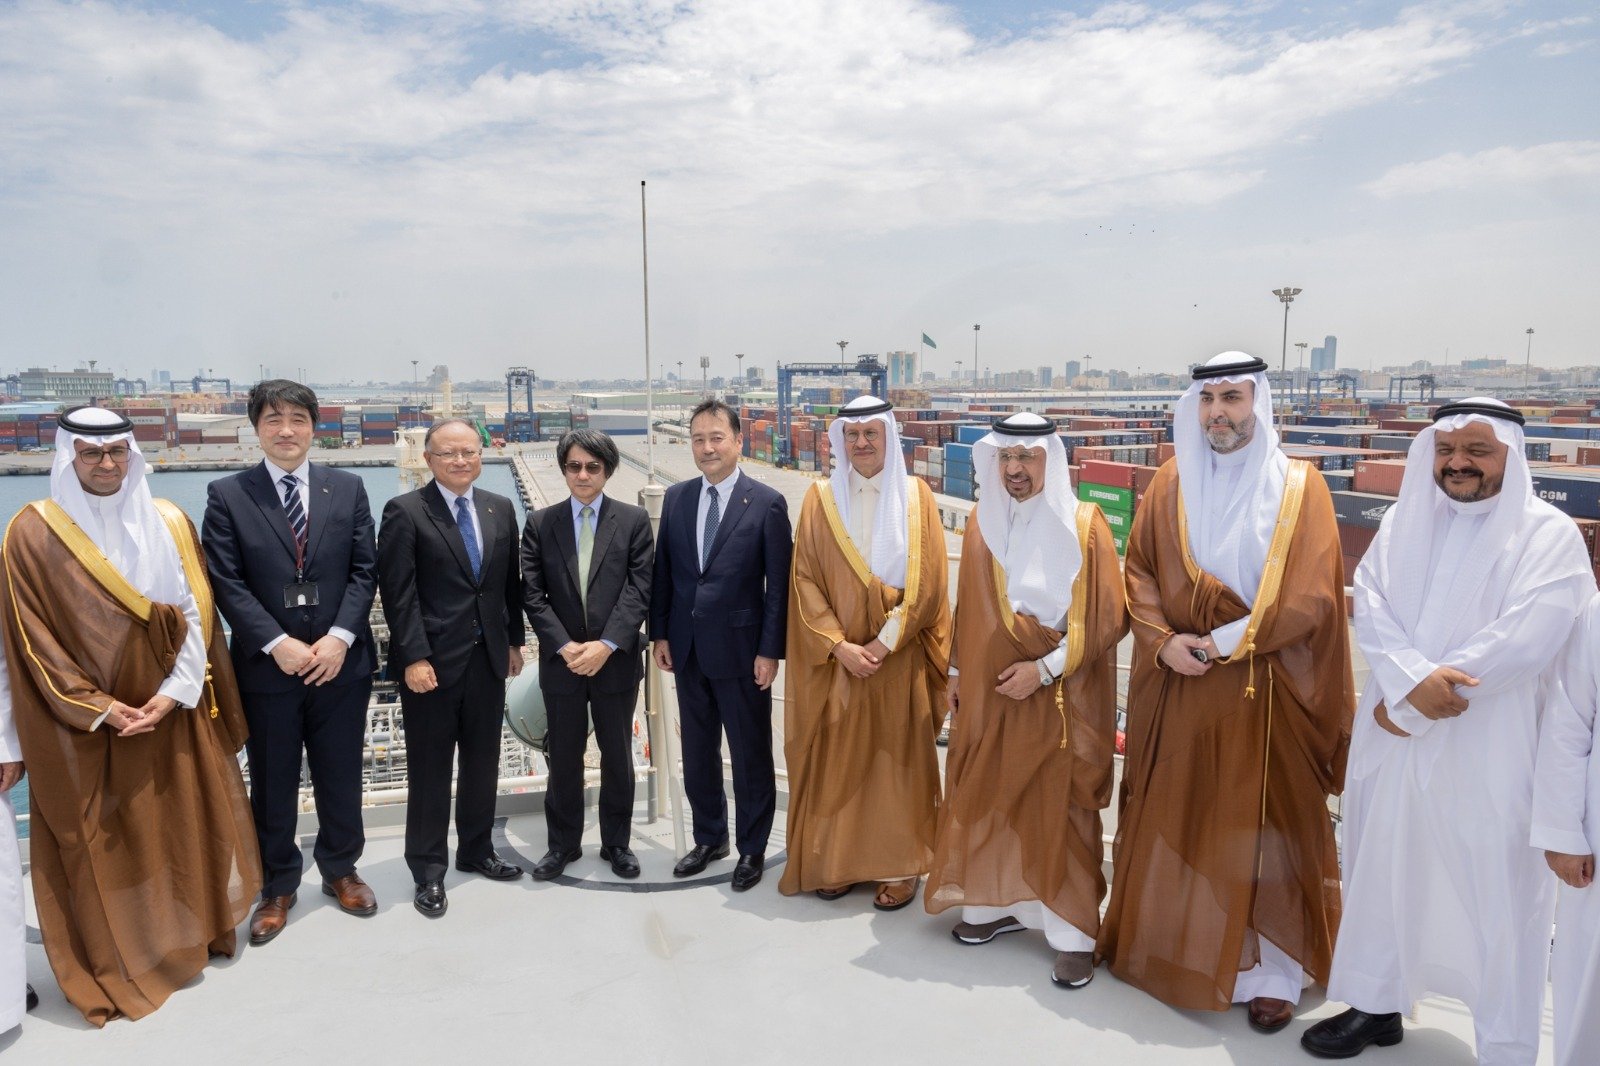 وزير الطاقة ووزير الاستثمار السعوديان مع الوفد المرافق خلال زيارتهم أول ناقلة بحرية في العالم لنقل الهيدروجين المسال